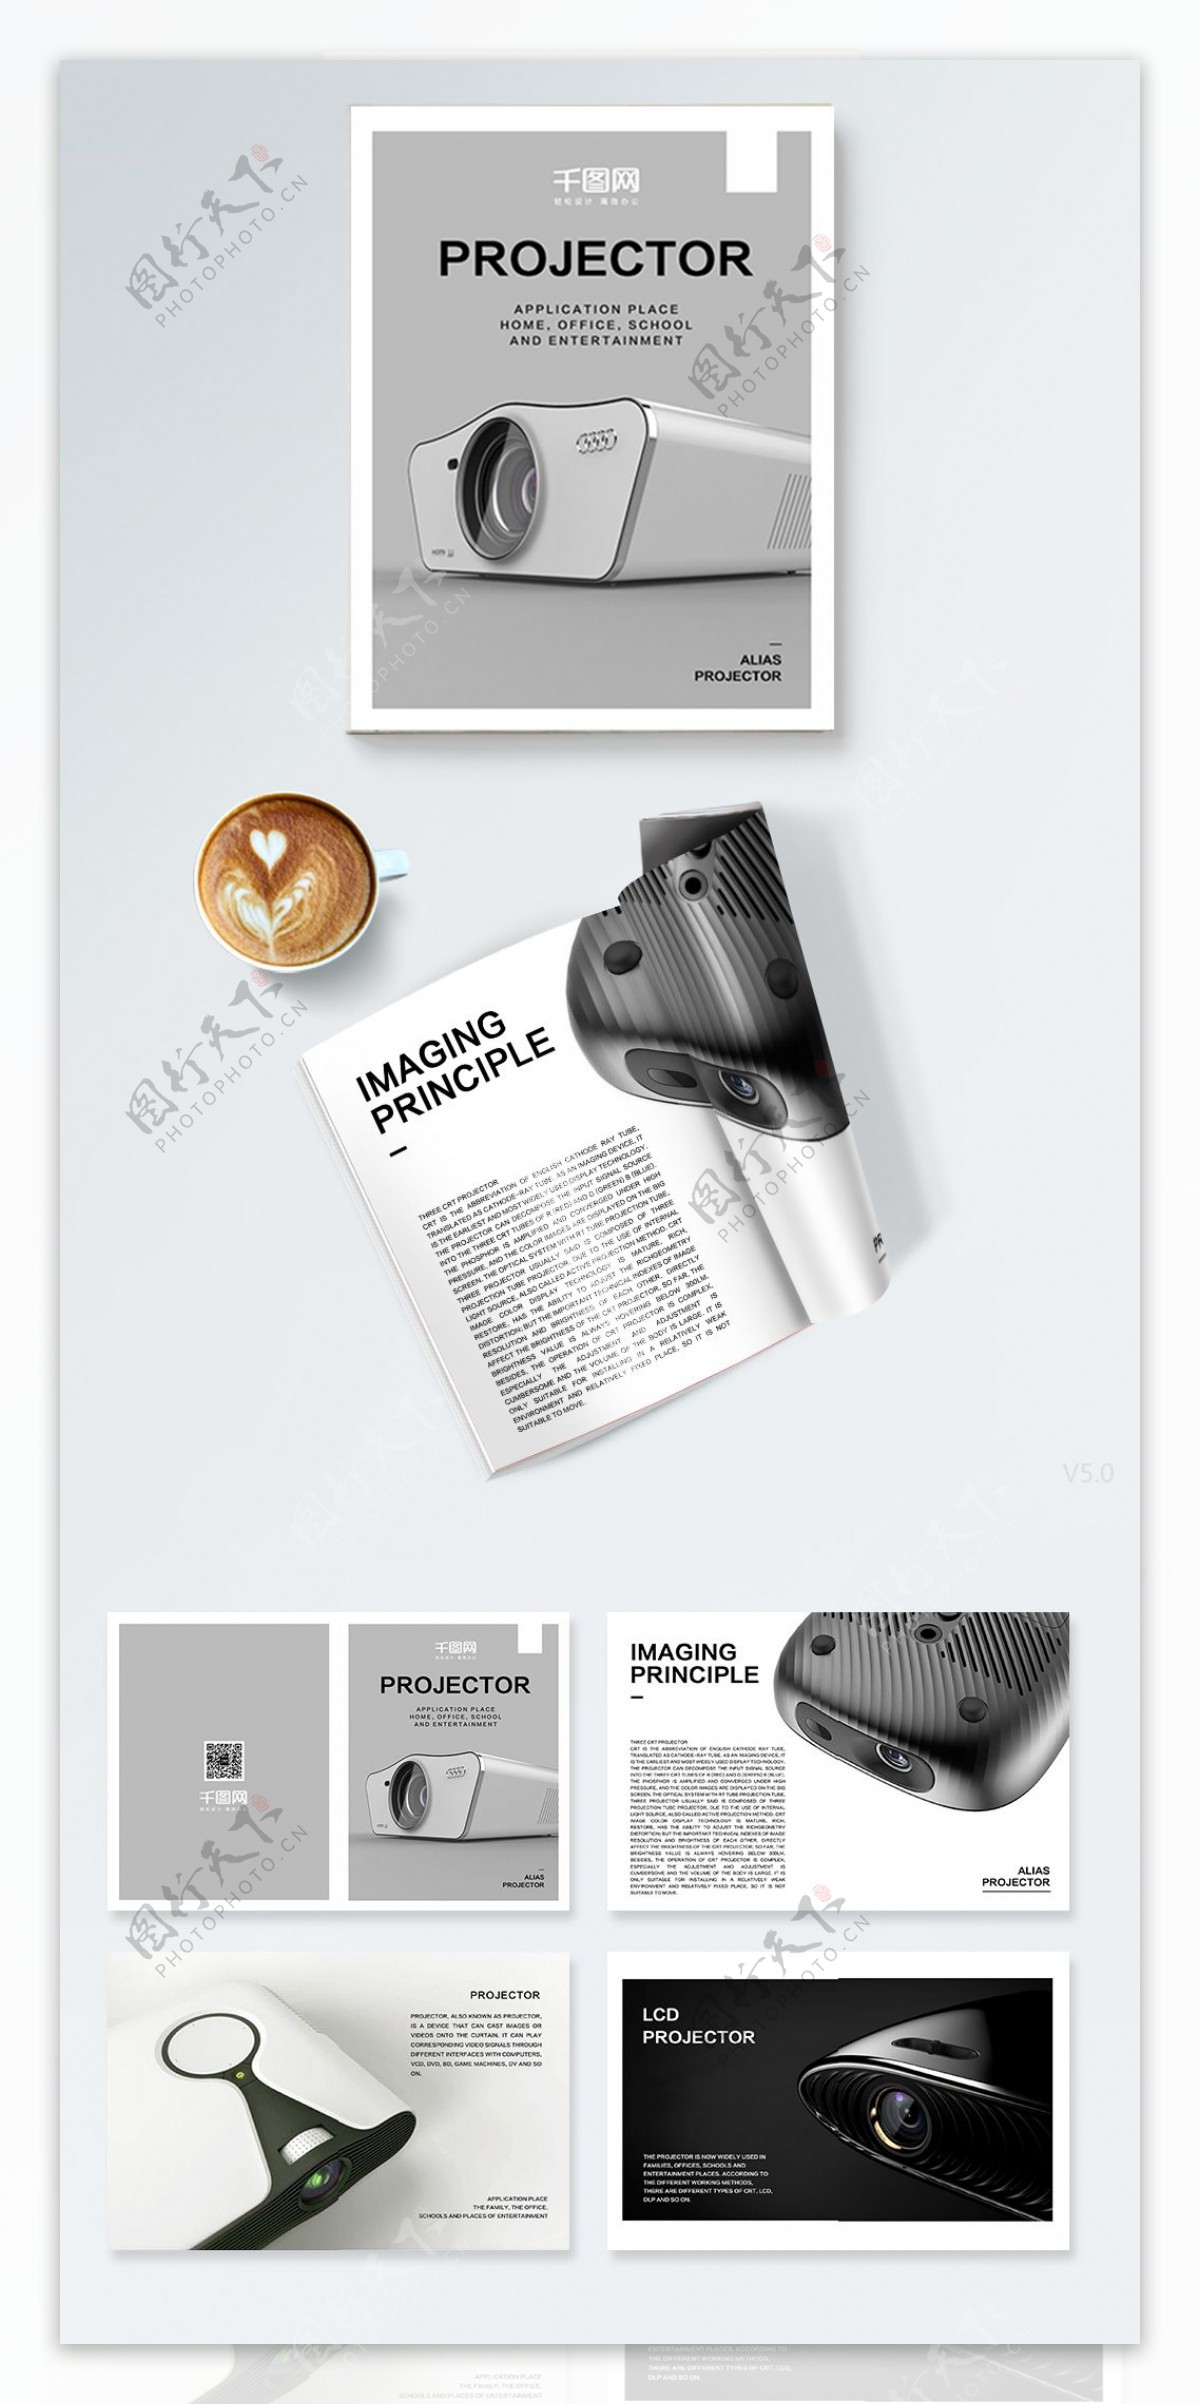 电子产品投影仪高端简洁宣传册画册